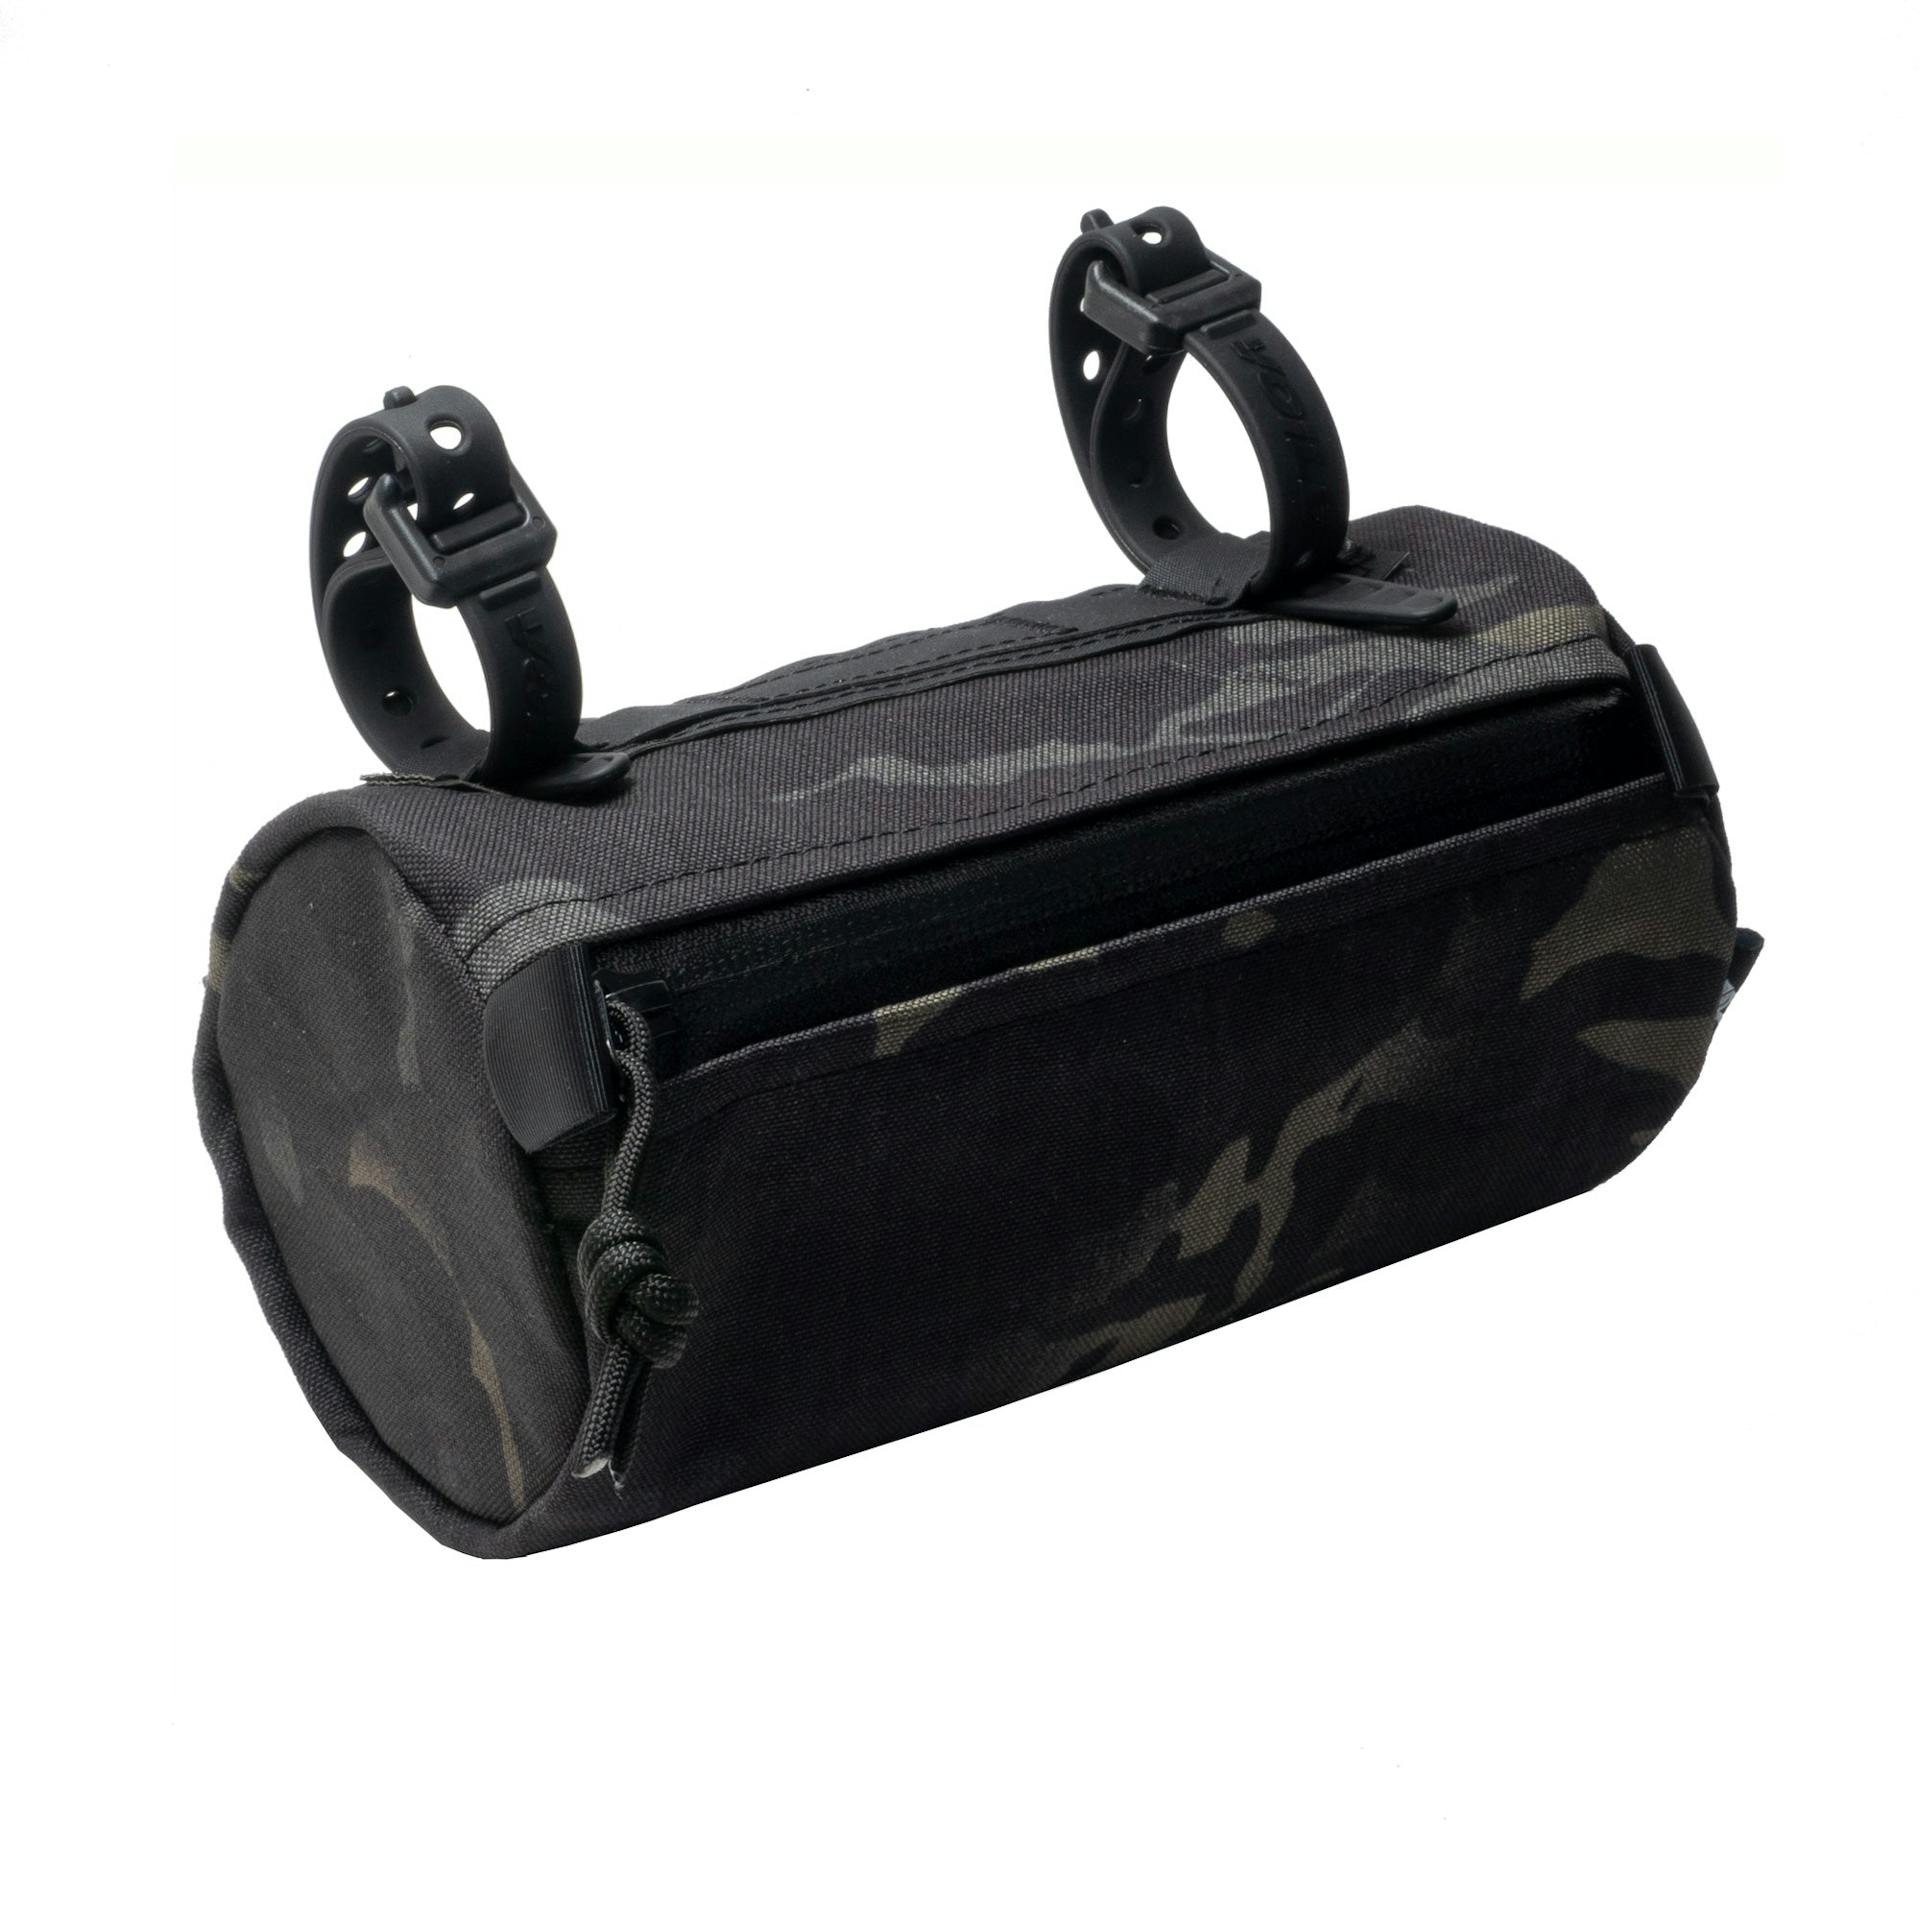 The Smuggler Handlebar Bag - Black Multicam